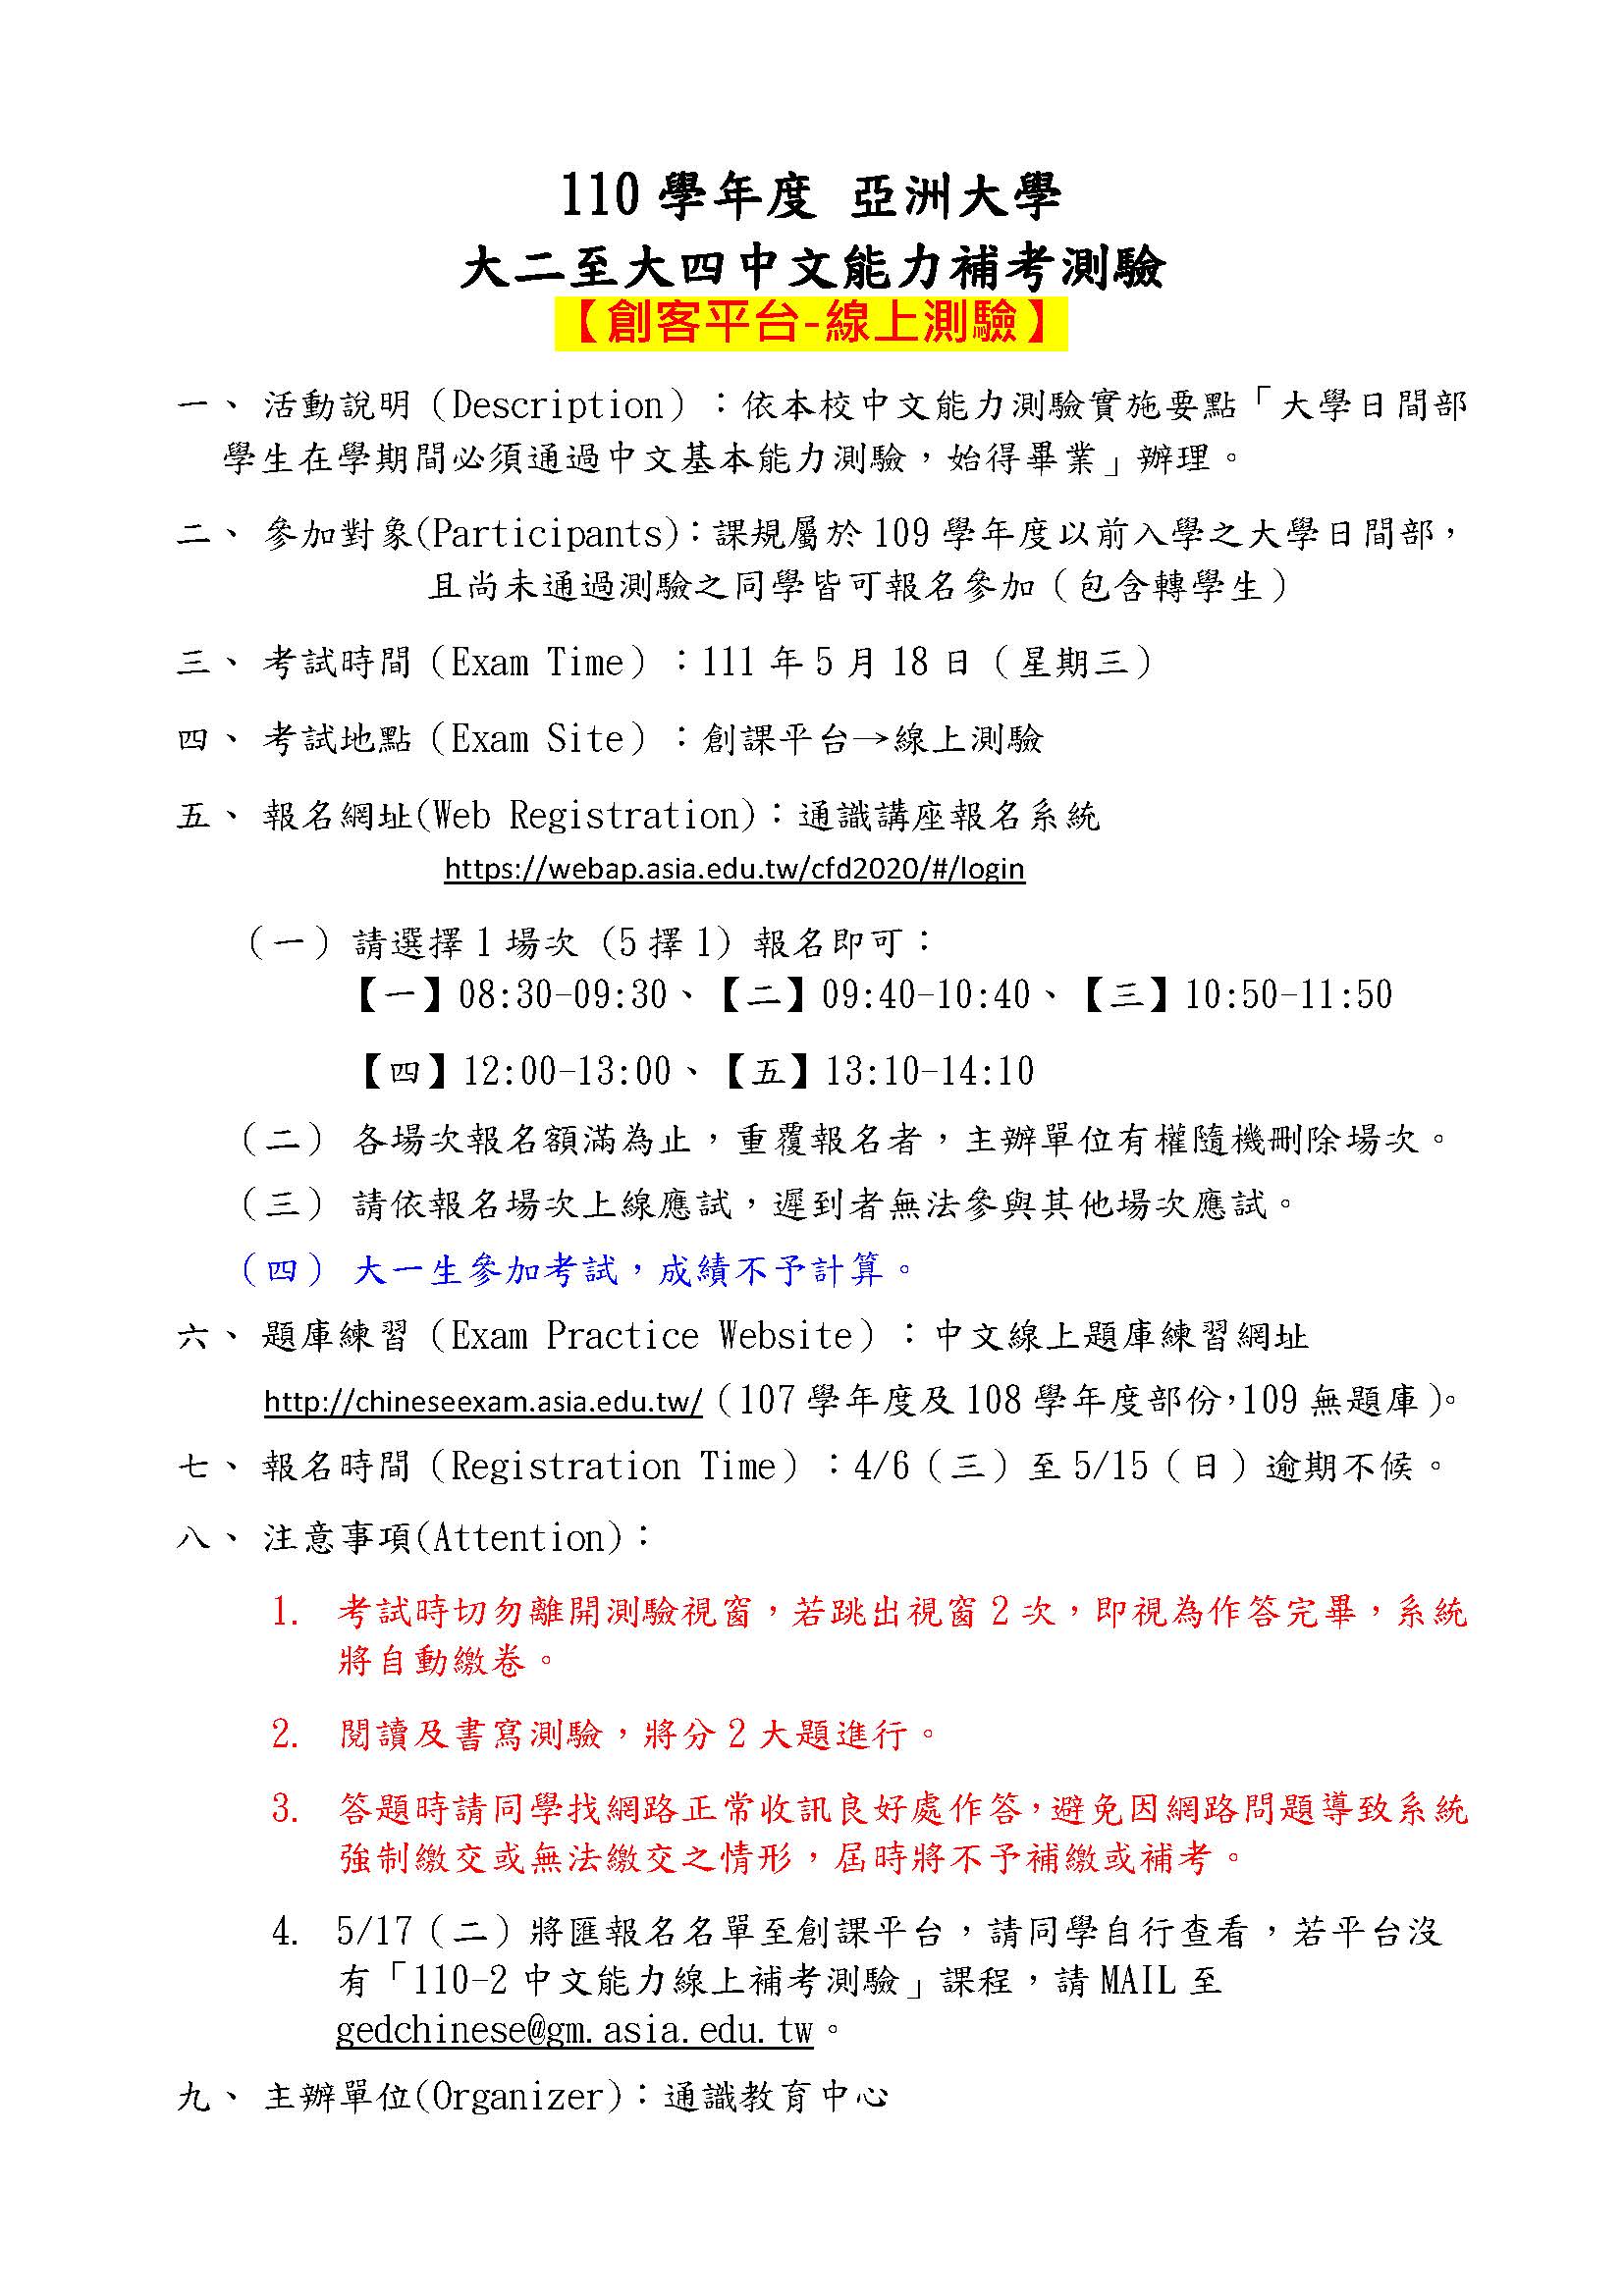 大二-大四中文能力測驗計畫書公告